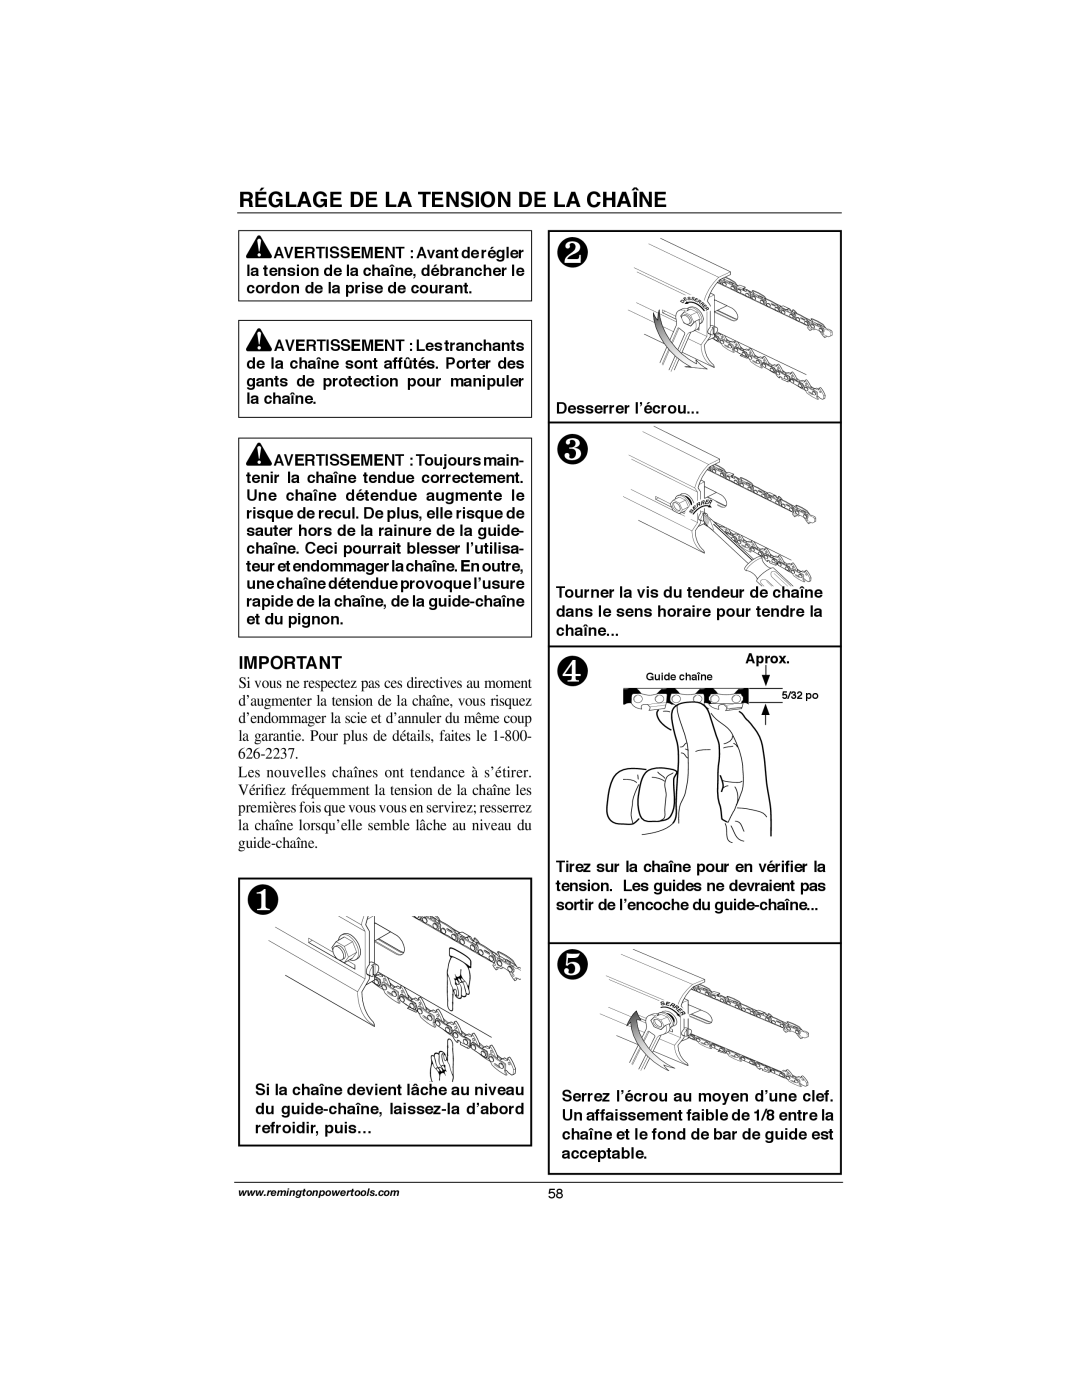 Remington Power Tools M30016US, M30016AS, M15014AS, M15012US, M35016AW, M30016AW owner manual Réglage De La Tension De La Chaîne 